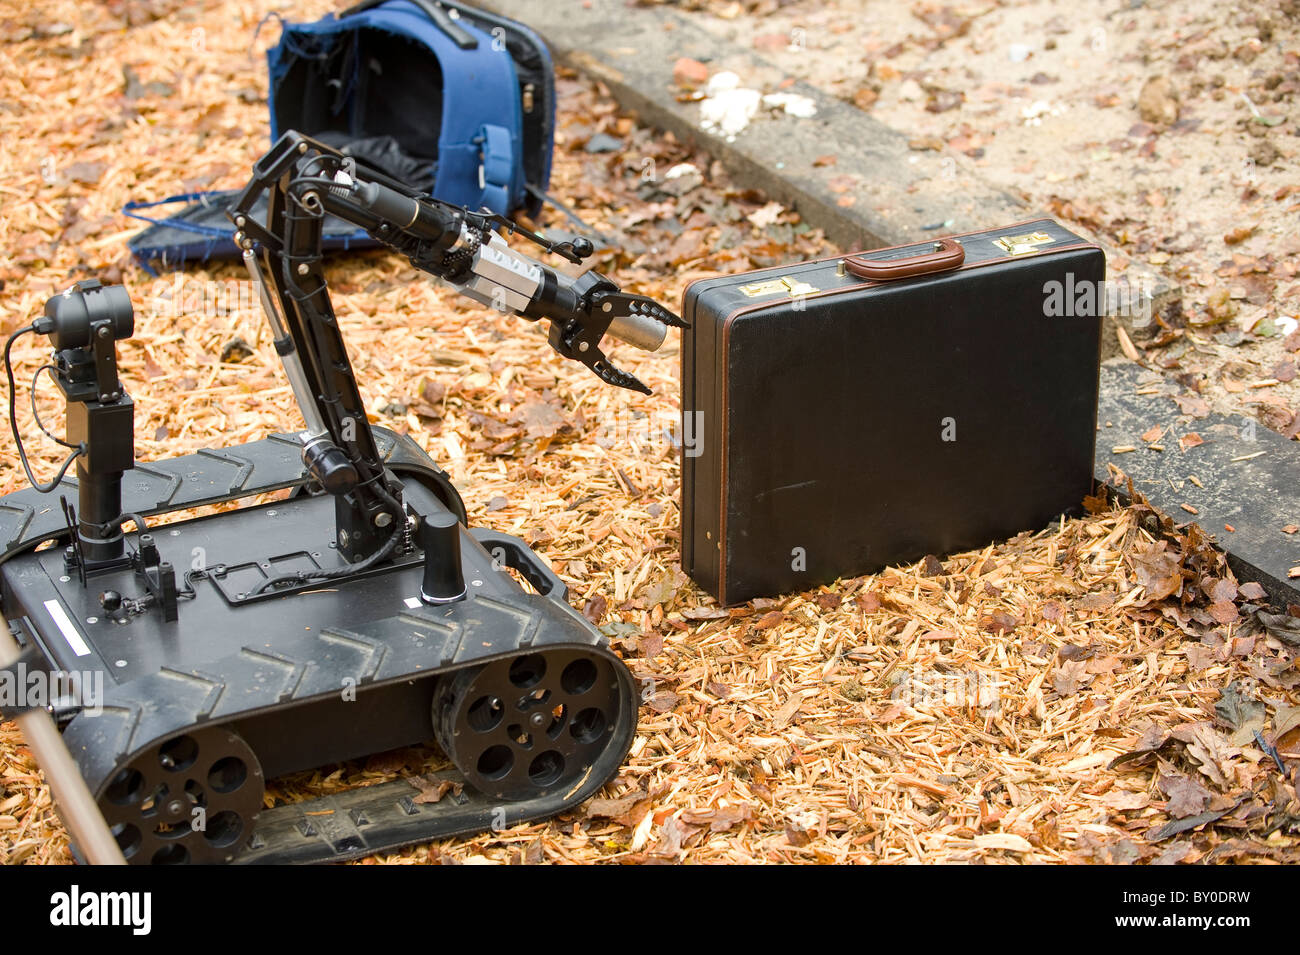 Jet d'eau de cuisson Robot NEM Disruptor, formation pour dearming des bombes en Afghanistan (Pigstick) Banque D'Images